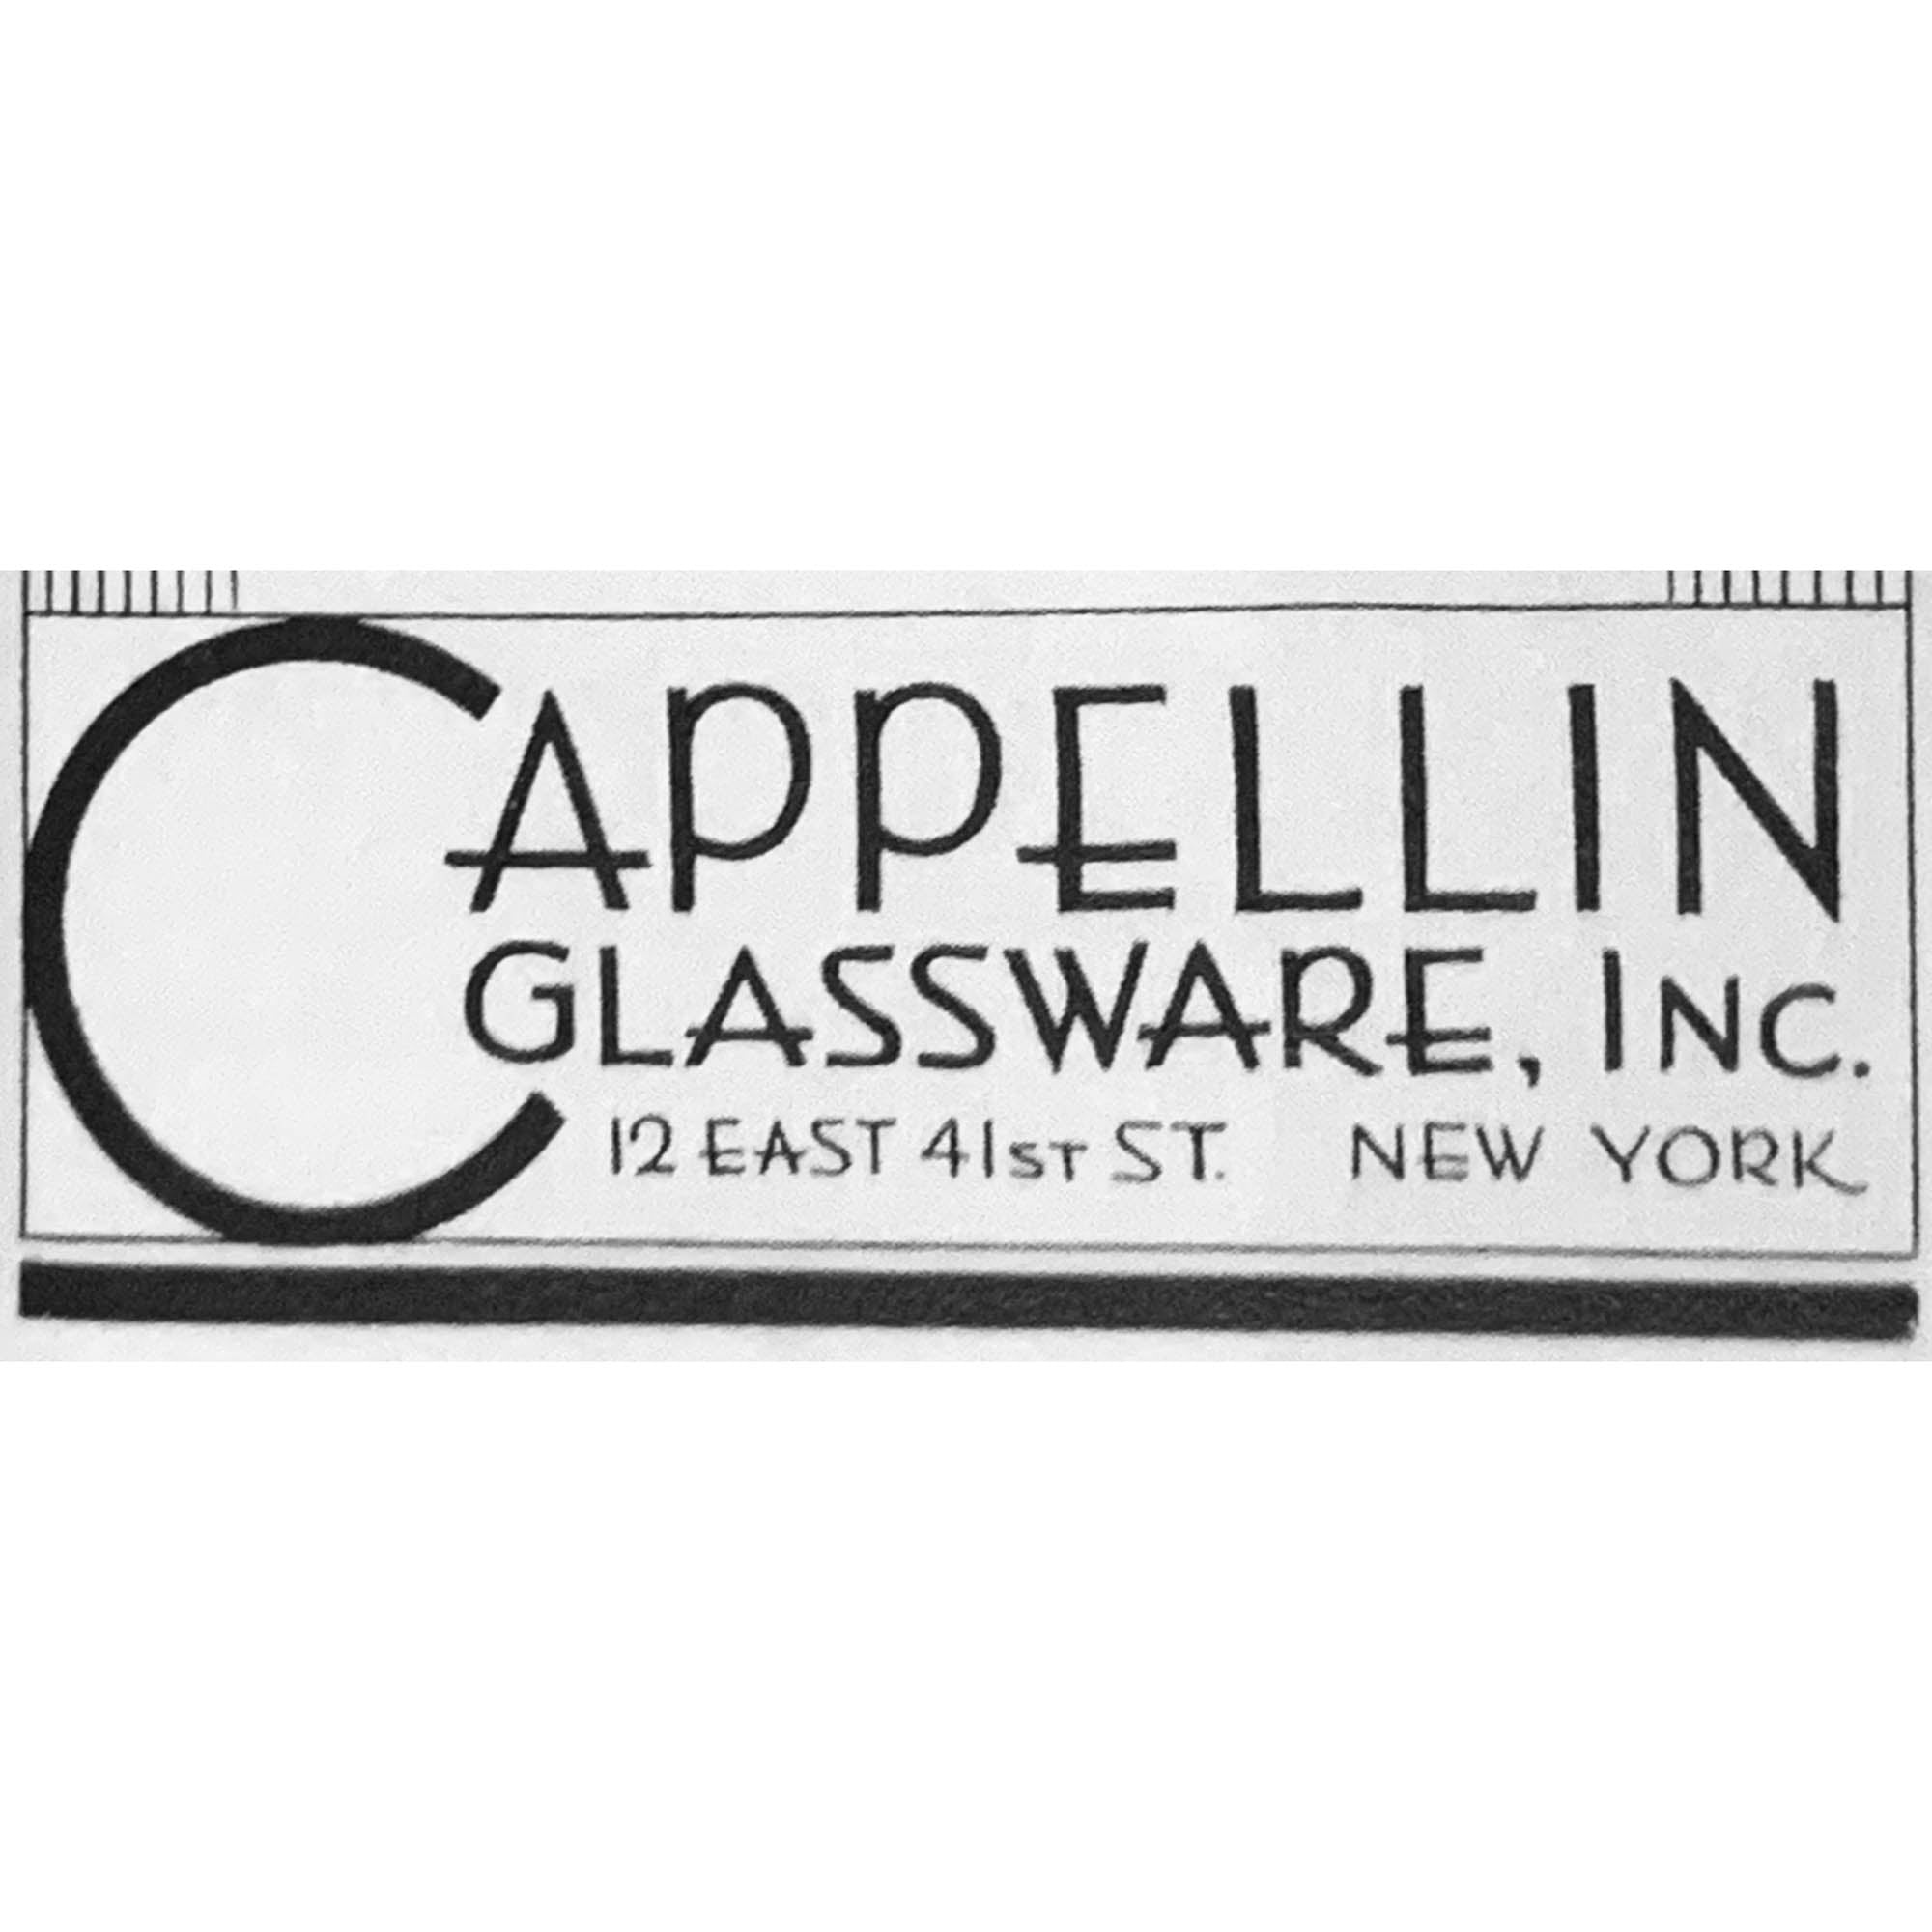 M.V.M. Cappellin & Co.